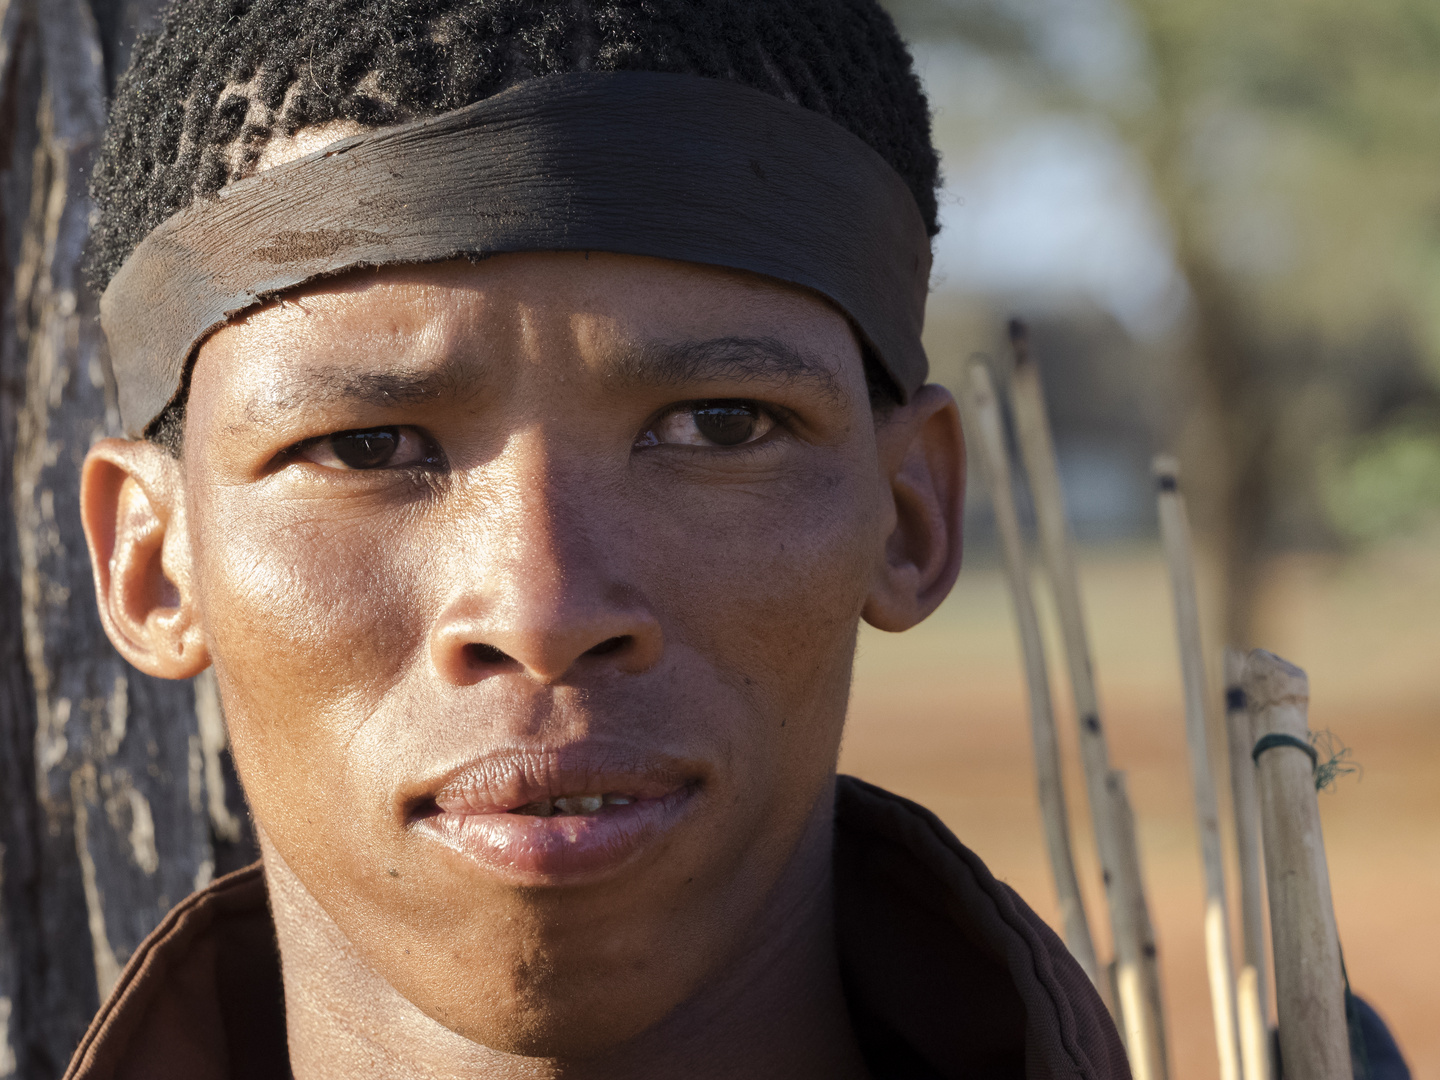 junger San - Nachkomme der Ureinwohner Namibias